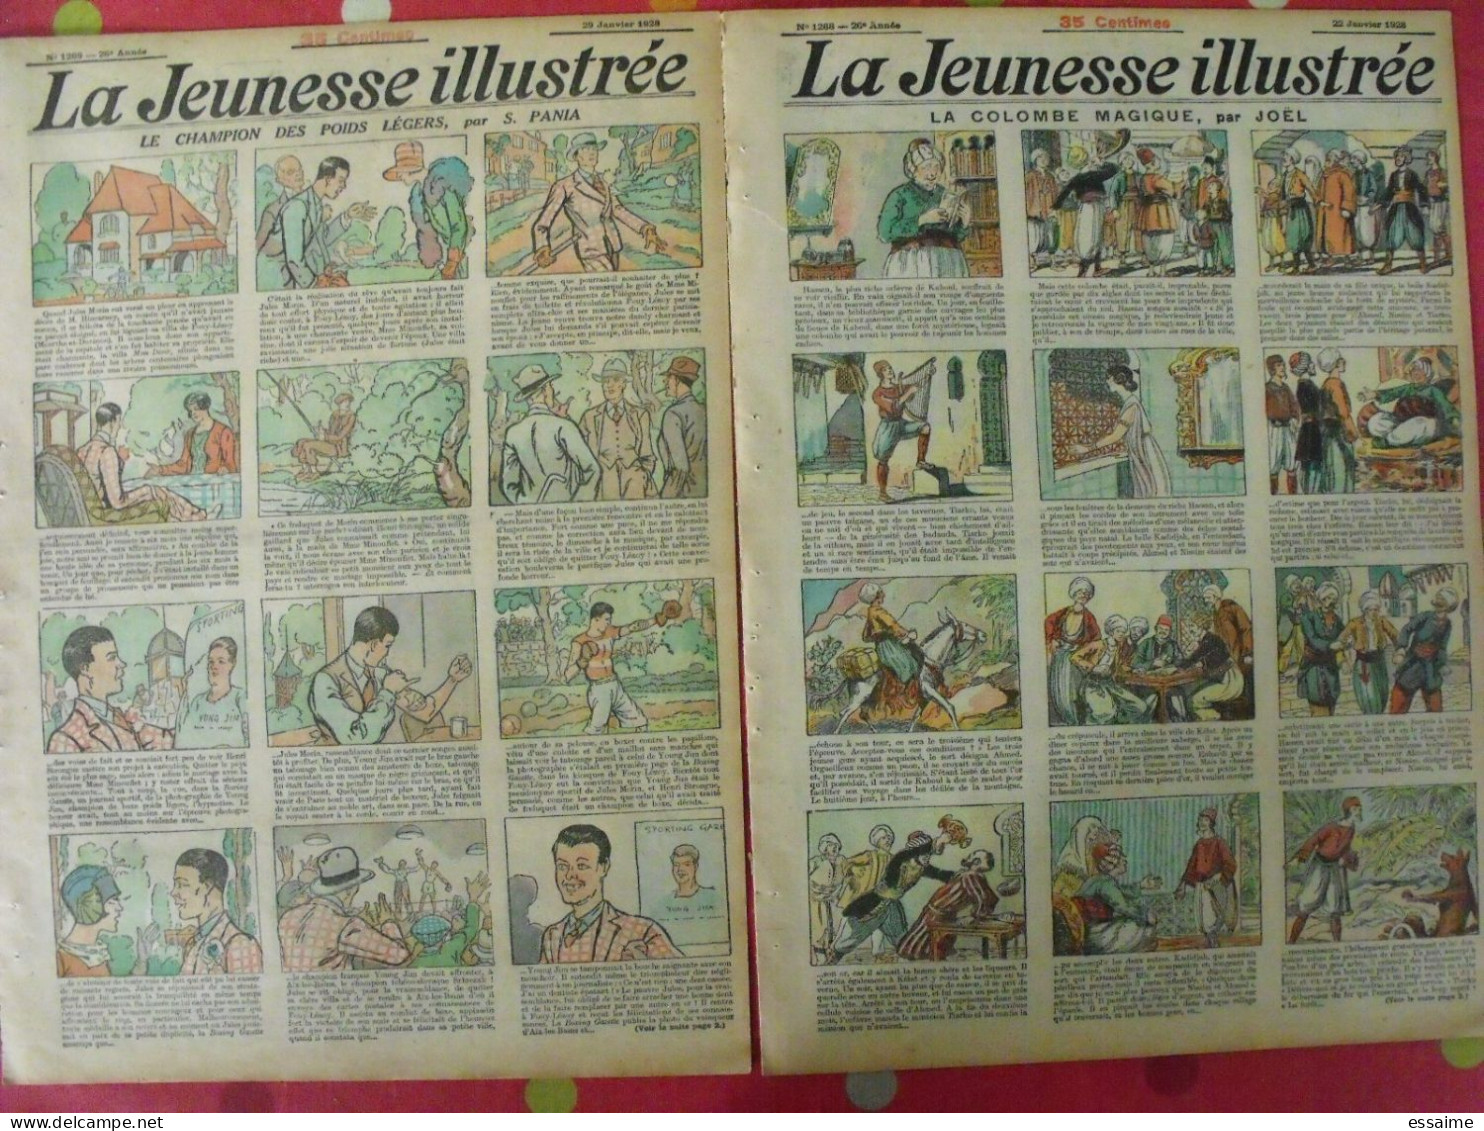 14 n° de La Jeunesse illustrée de 1927-28. à redécouvrir